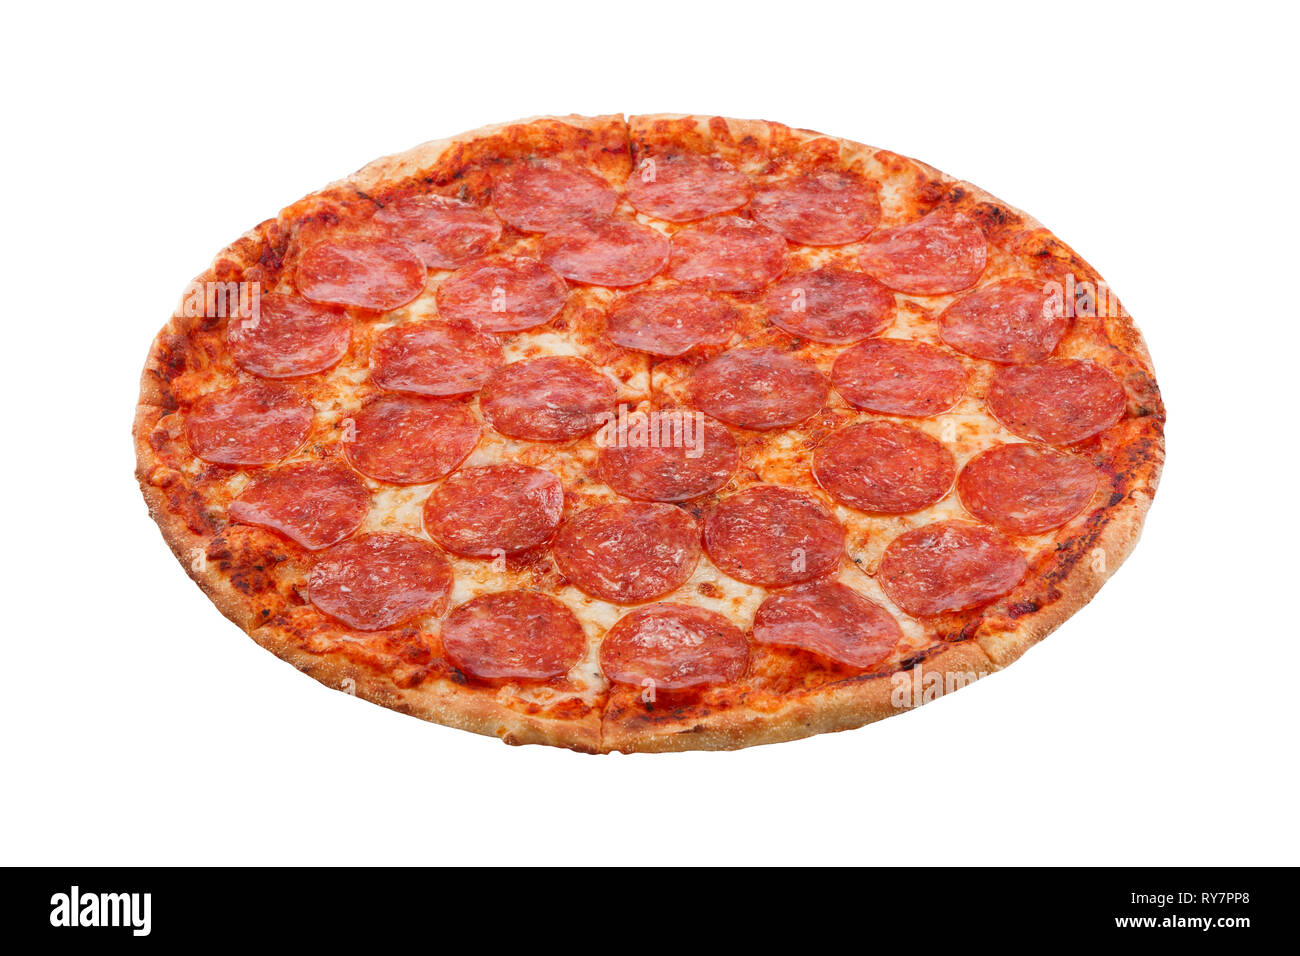 какую колбасу положить в пиццу пепперони фото 96